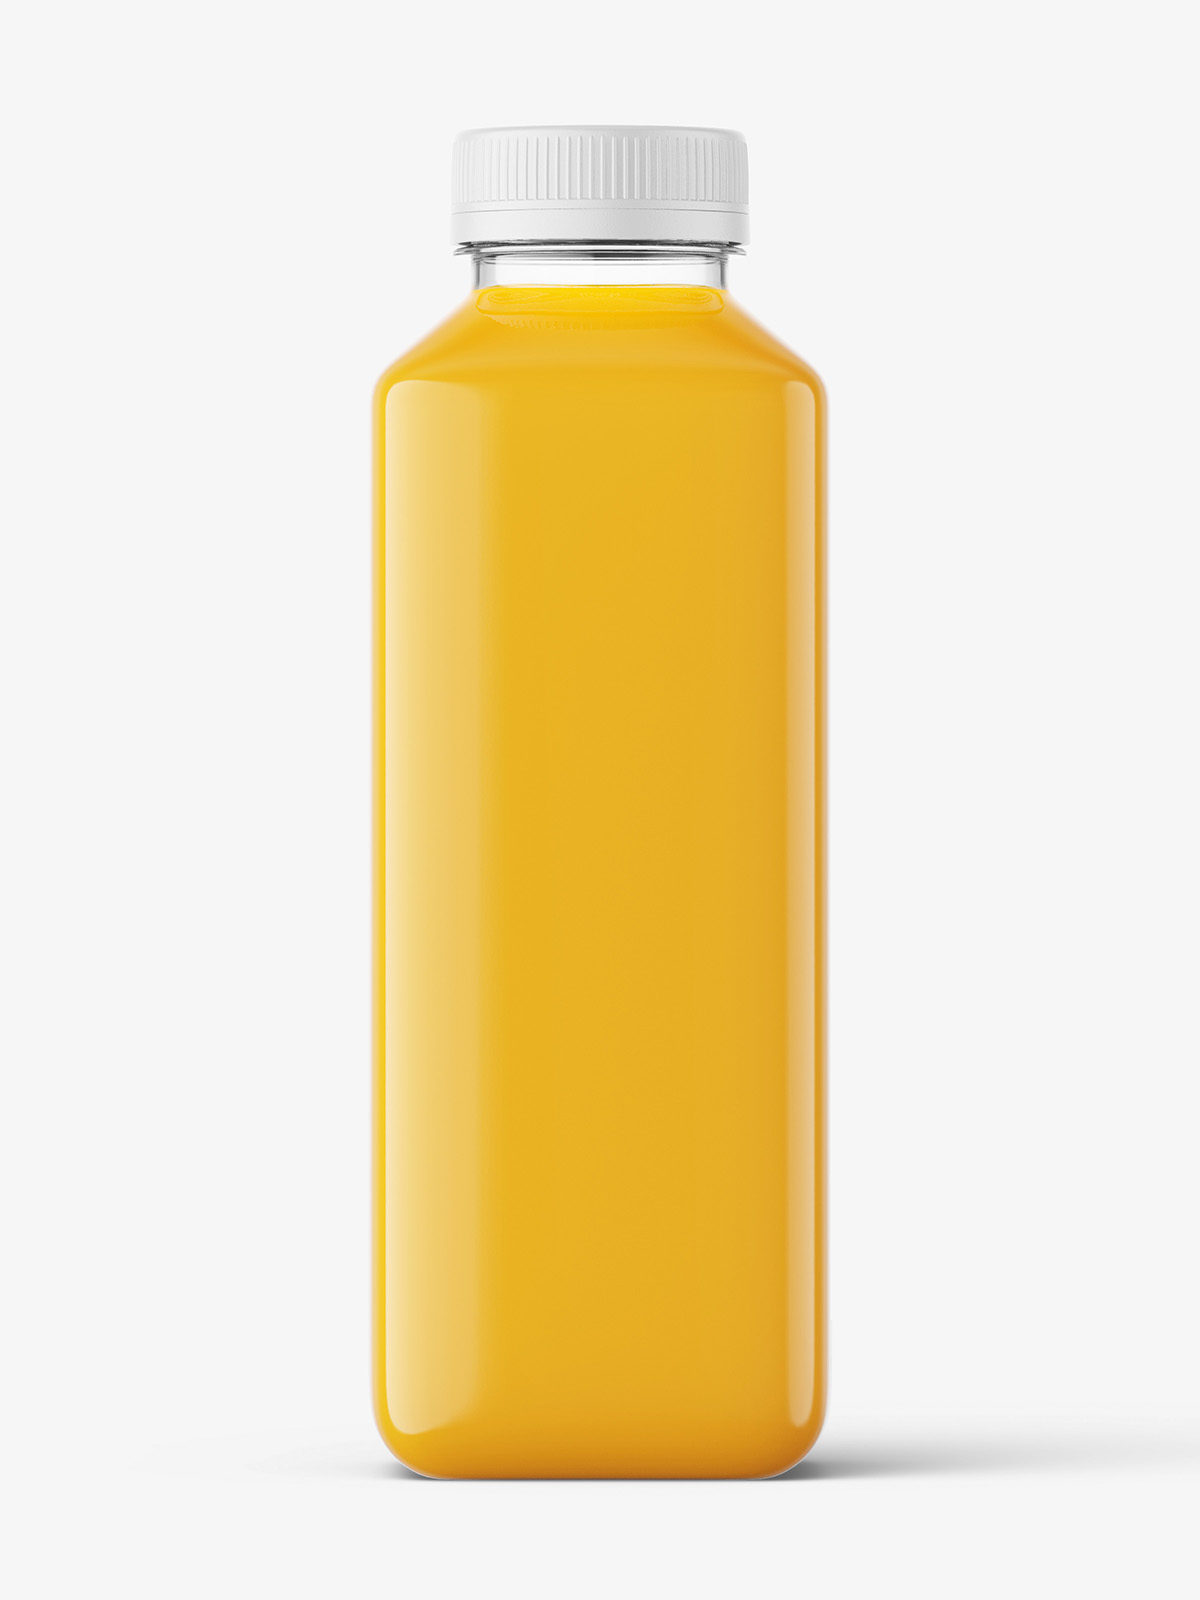 https://smartymockups.com/wp-content/uploads/2019/05/Orange_Juice_Bottle_Mockup_p1.jpg